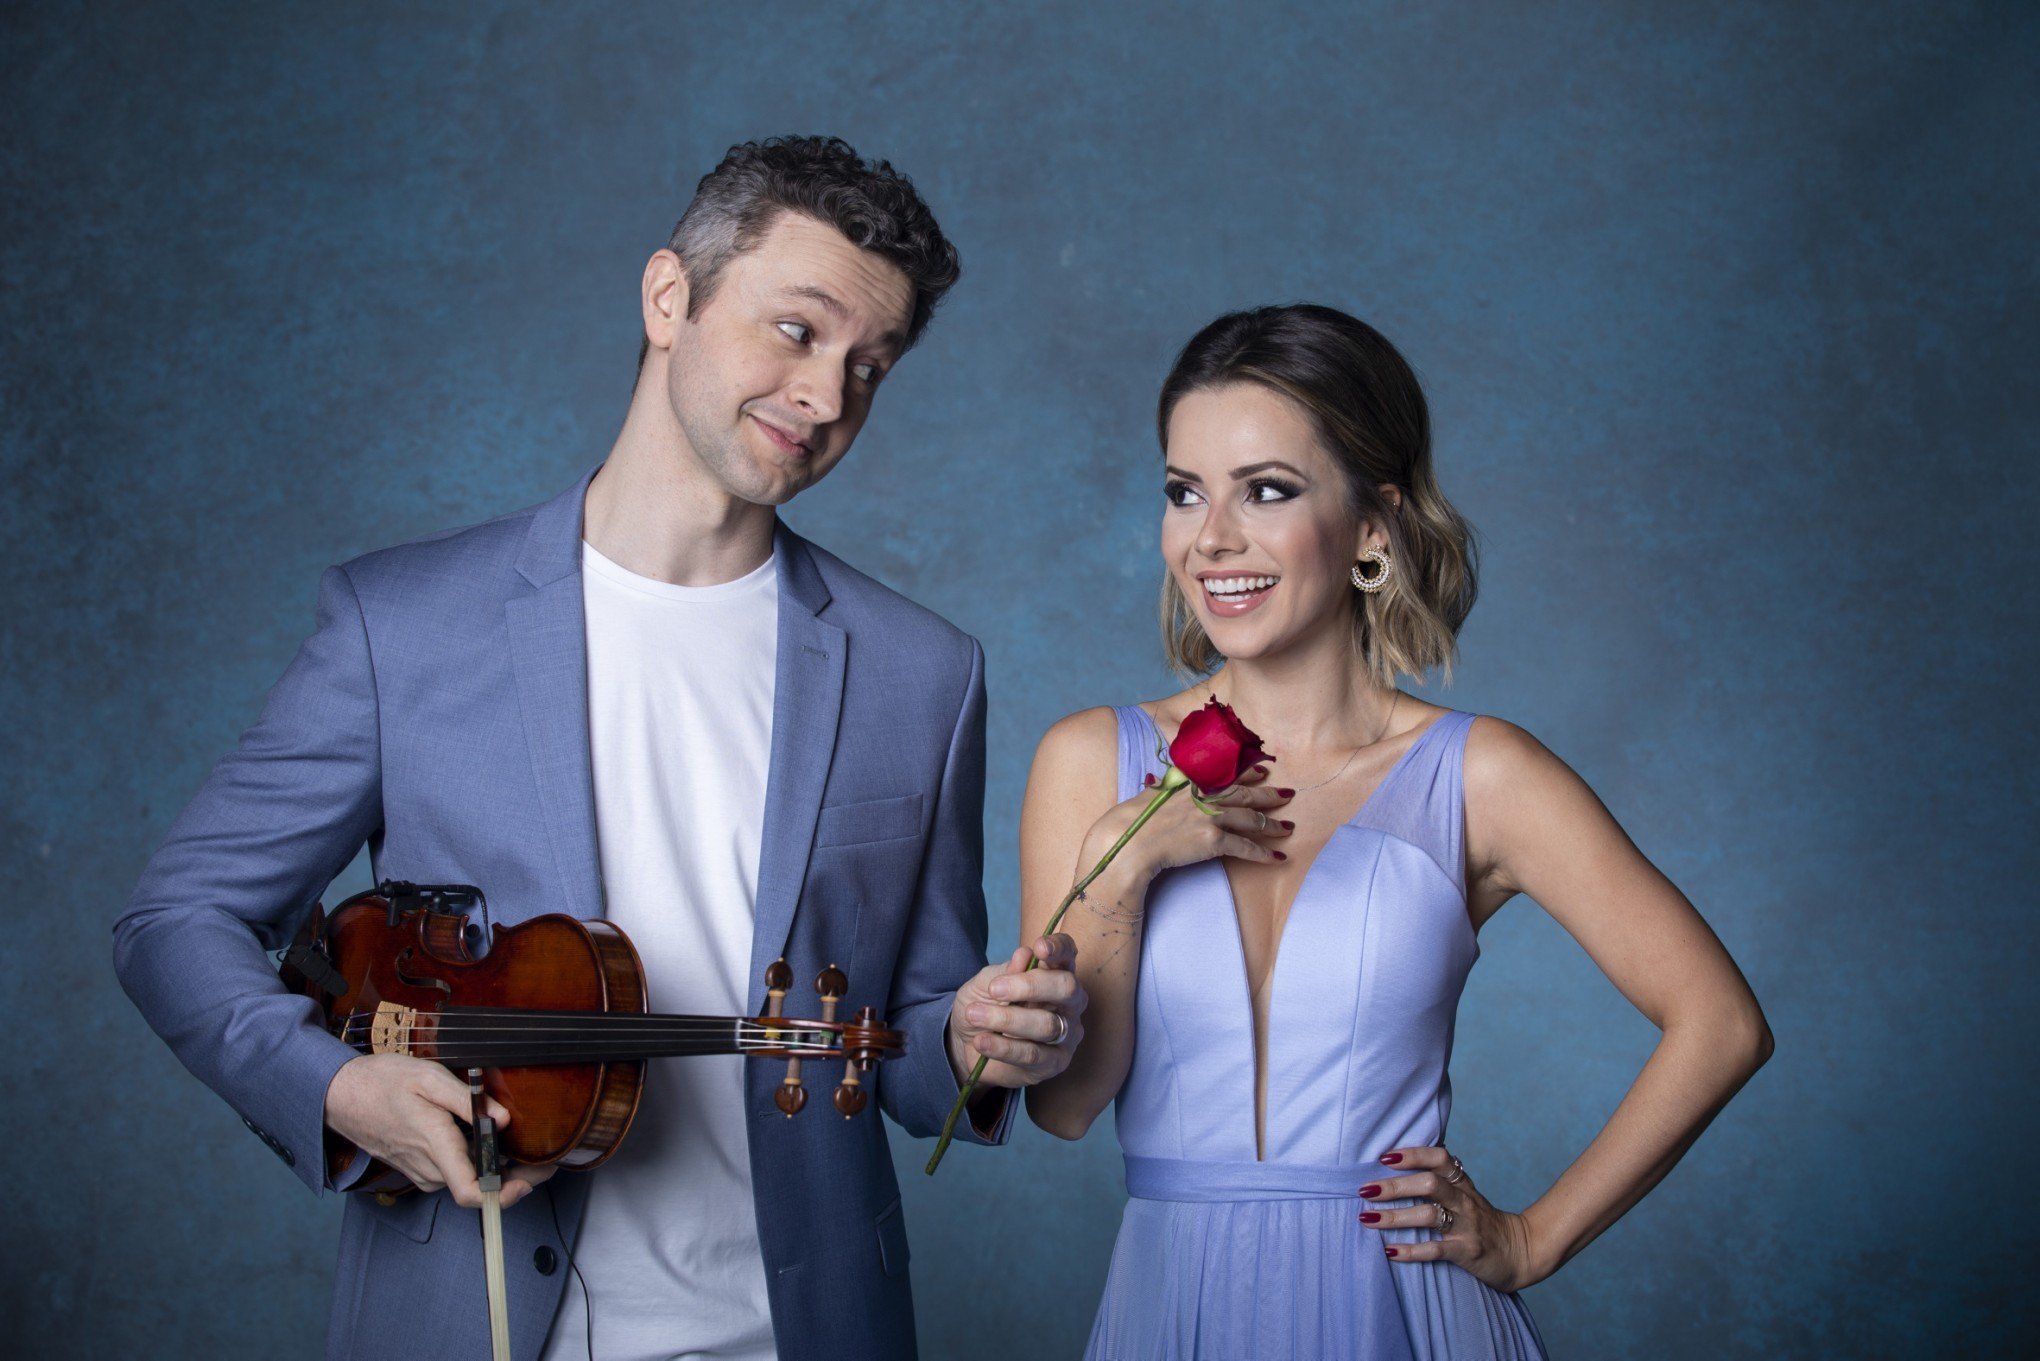 TV GLOBO: Sandy e Lucas cantam juntos após divórcio e fãs choram no programa Altas Horas